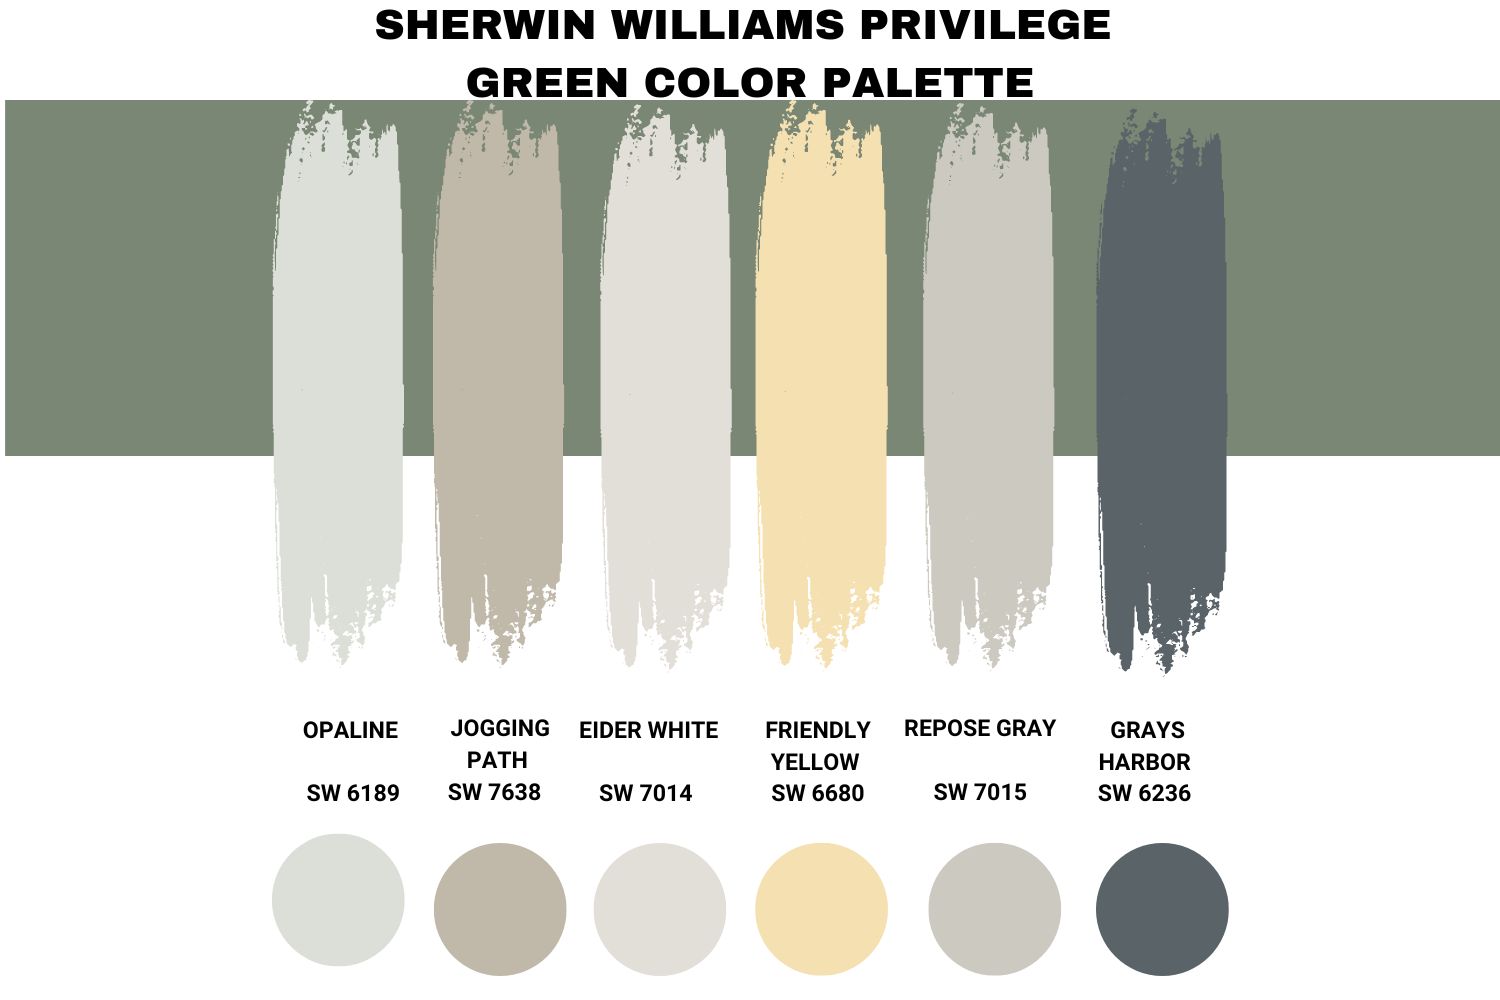 Sherwin Williams Privilege Green Color Palette